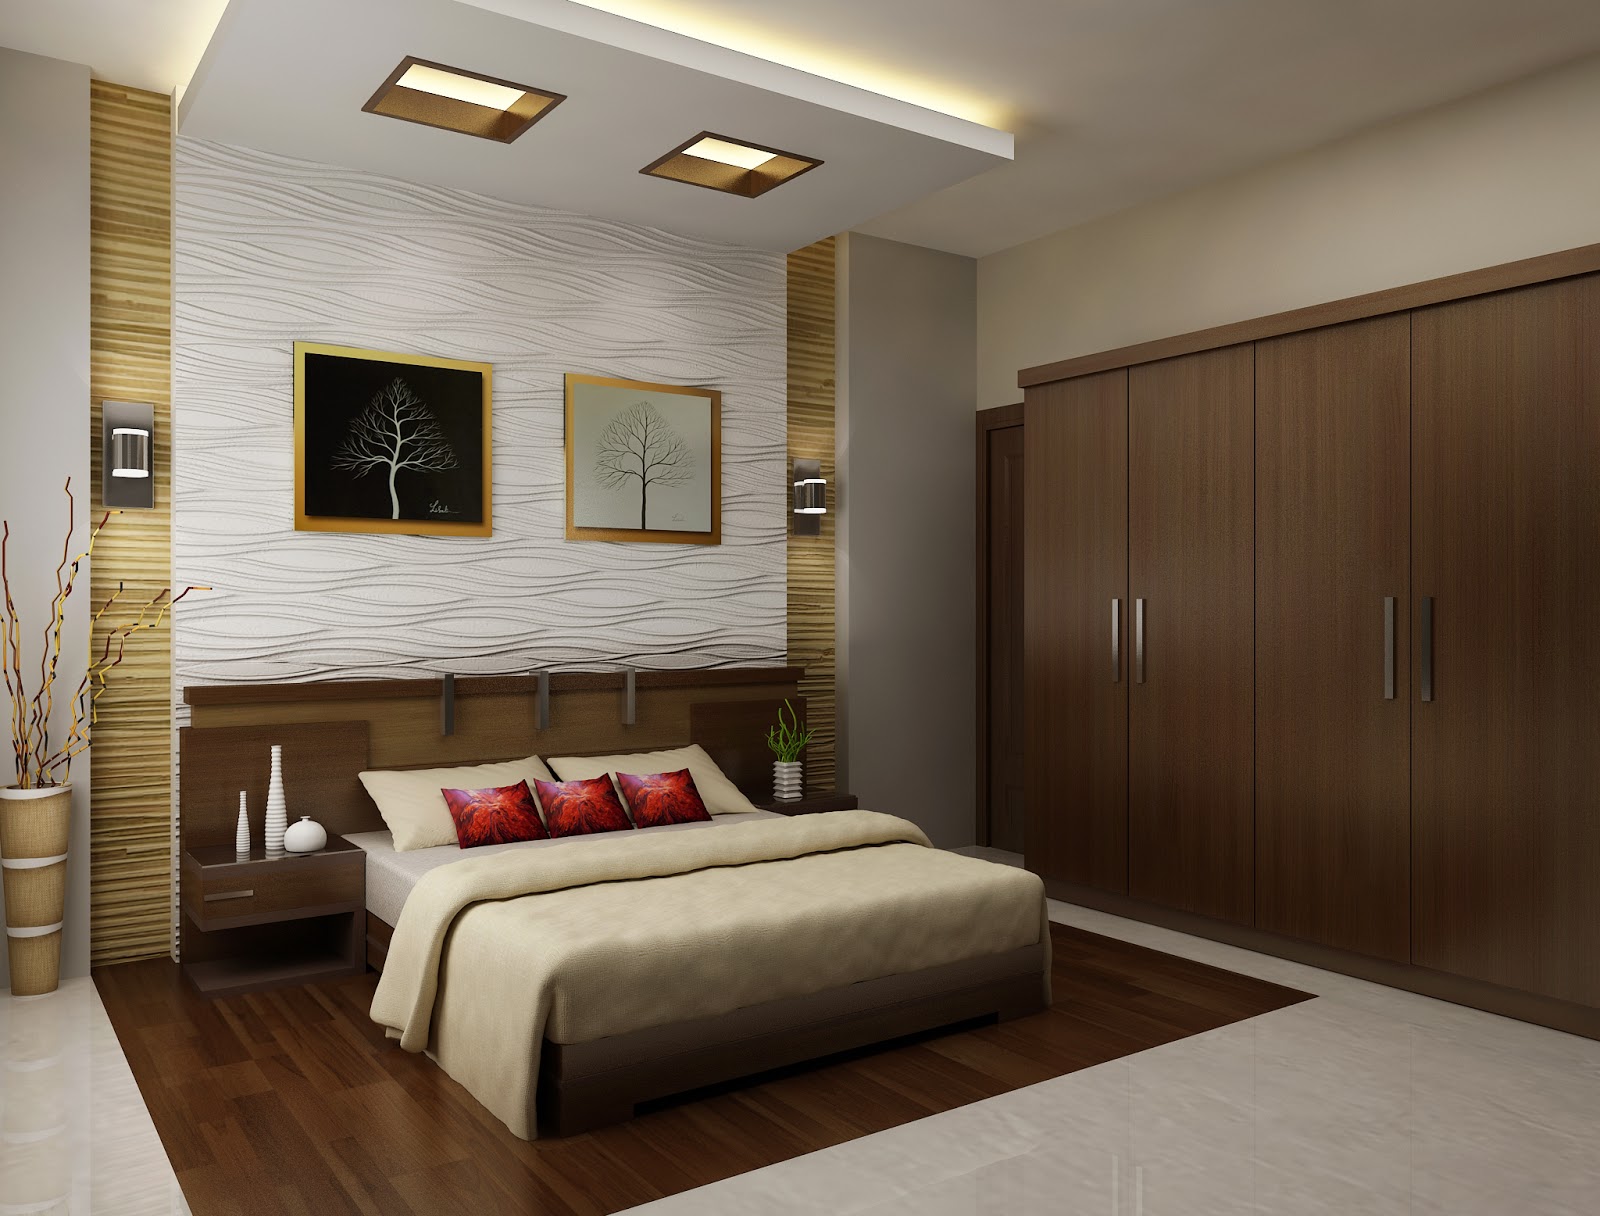 ... bedroom design bedroom design kerala style bedroom furniture design